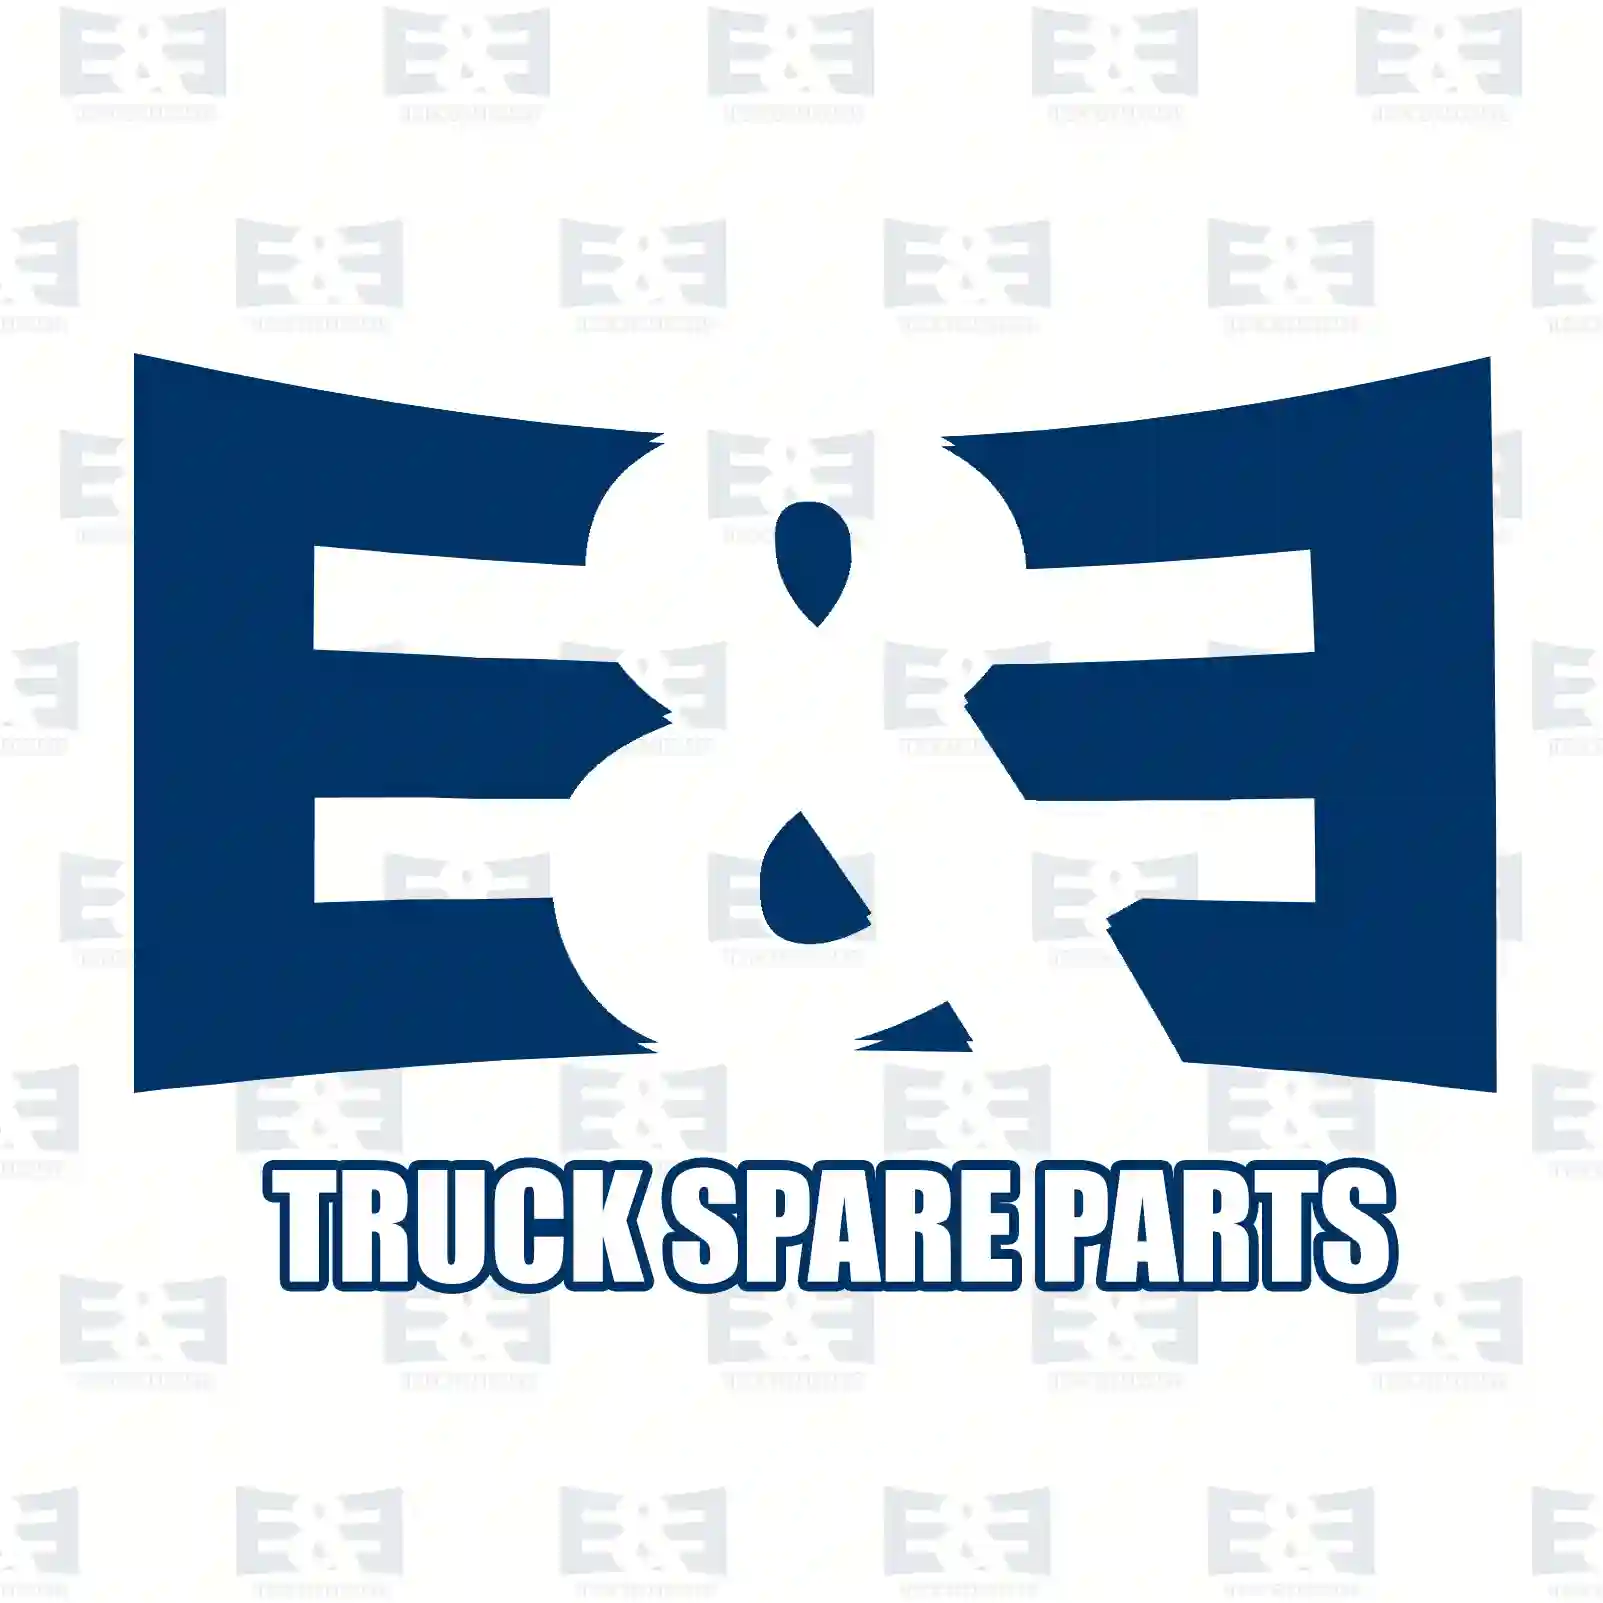 Gasket kit, gearbox, 2E2277900, 08124572, 8124572, 81329006006 ||  2E2277900 E&E Truck Spare Parts | Truck Spare Parts, Auotomotive Spare Parts Gasket kit, gearbox, 2E2277900, 08124572, 8124572, 81329006006 ||  2E2277900 E&E Truck Spare Parts | Truck Spare Parts, Auotomotive Spare Parts